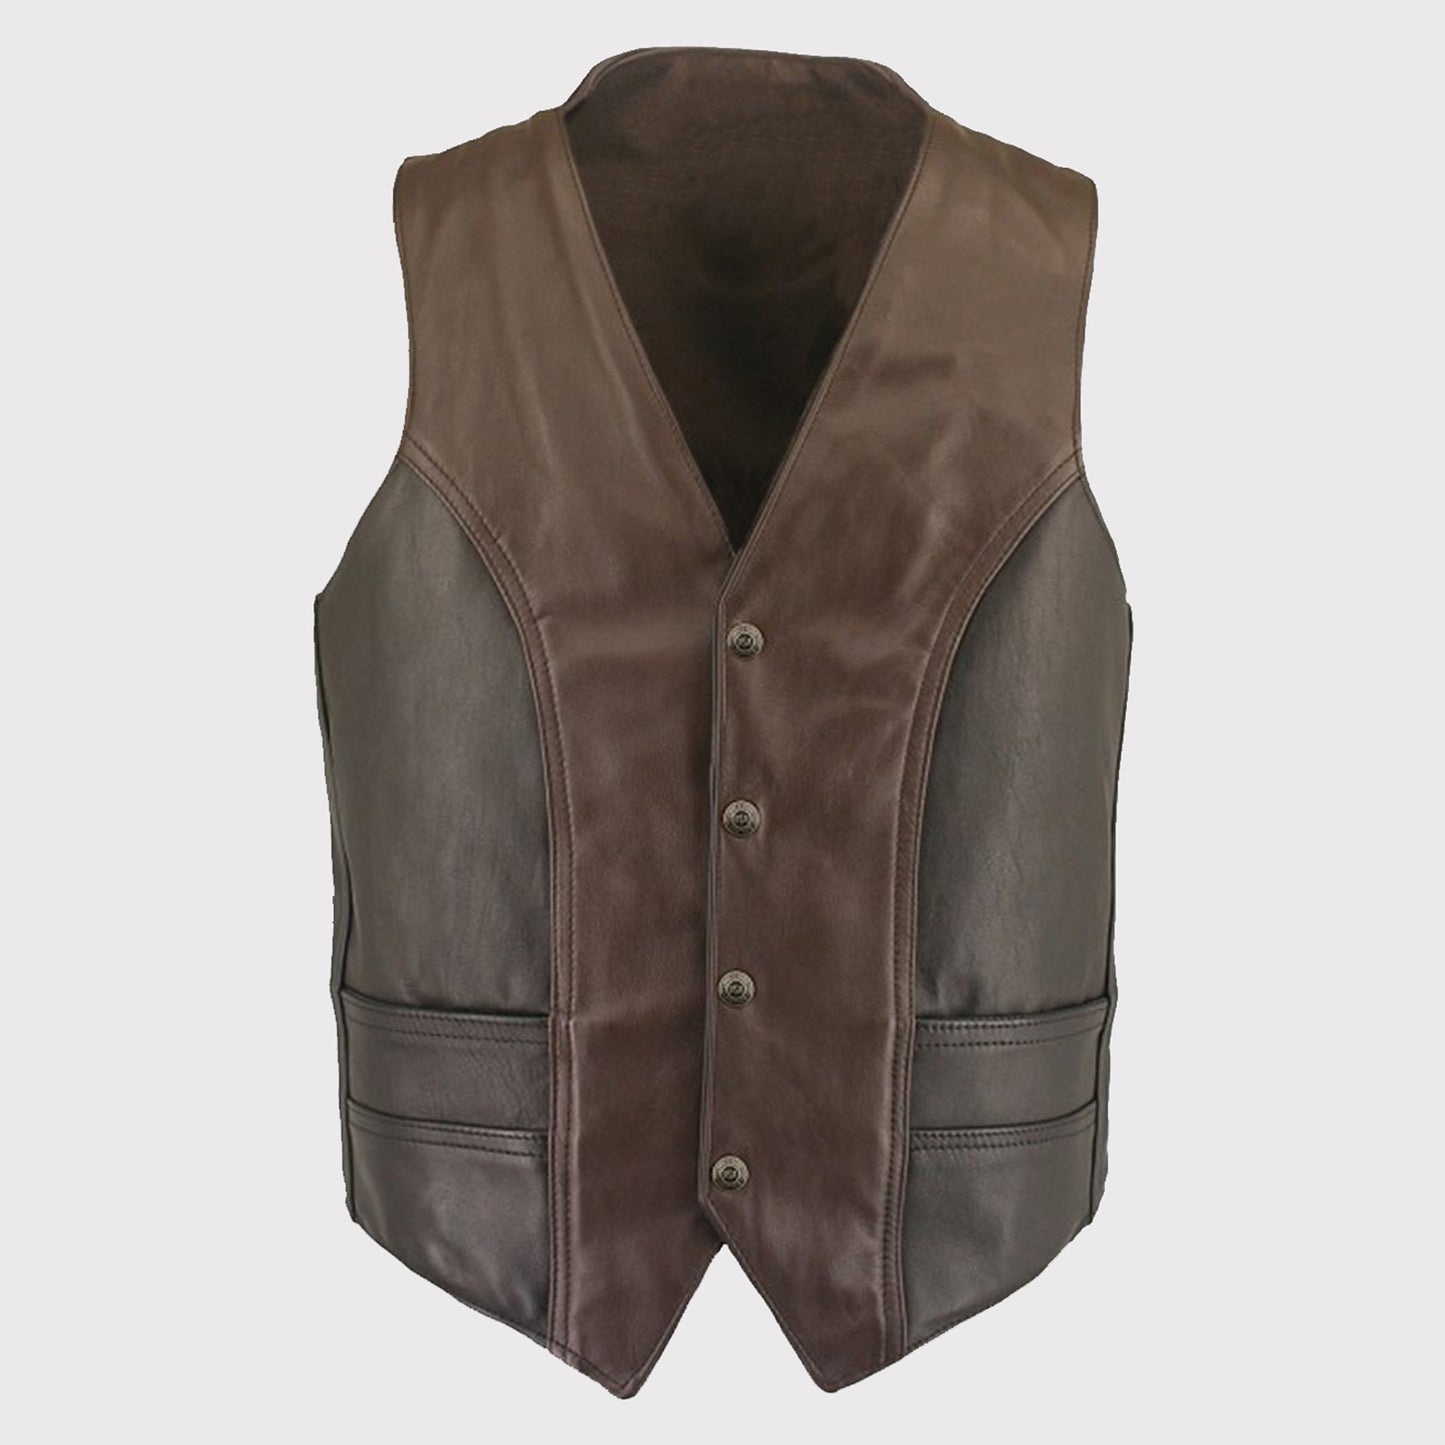 Men's Vintage Leather Vest - Classic Style - Brown Vest